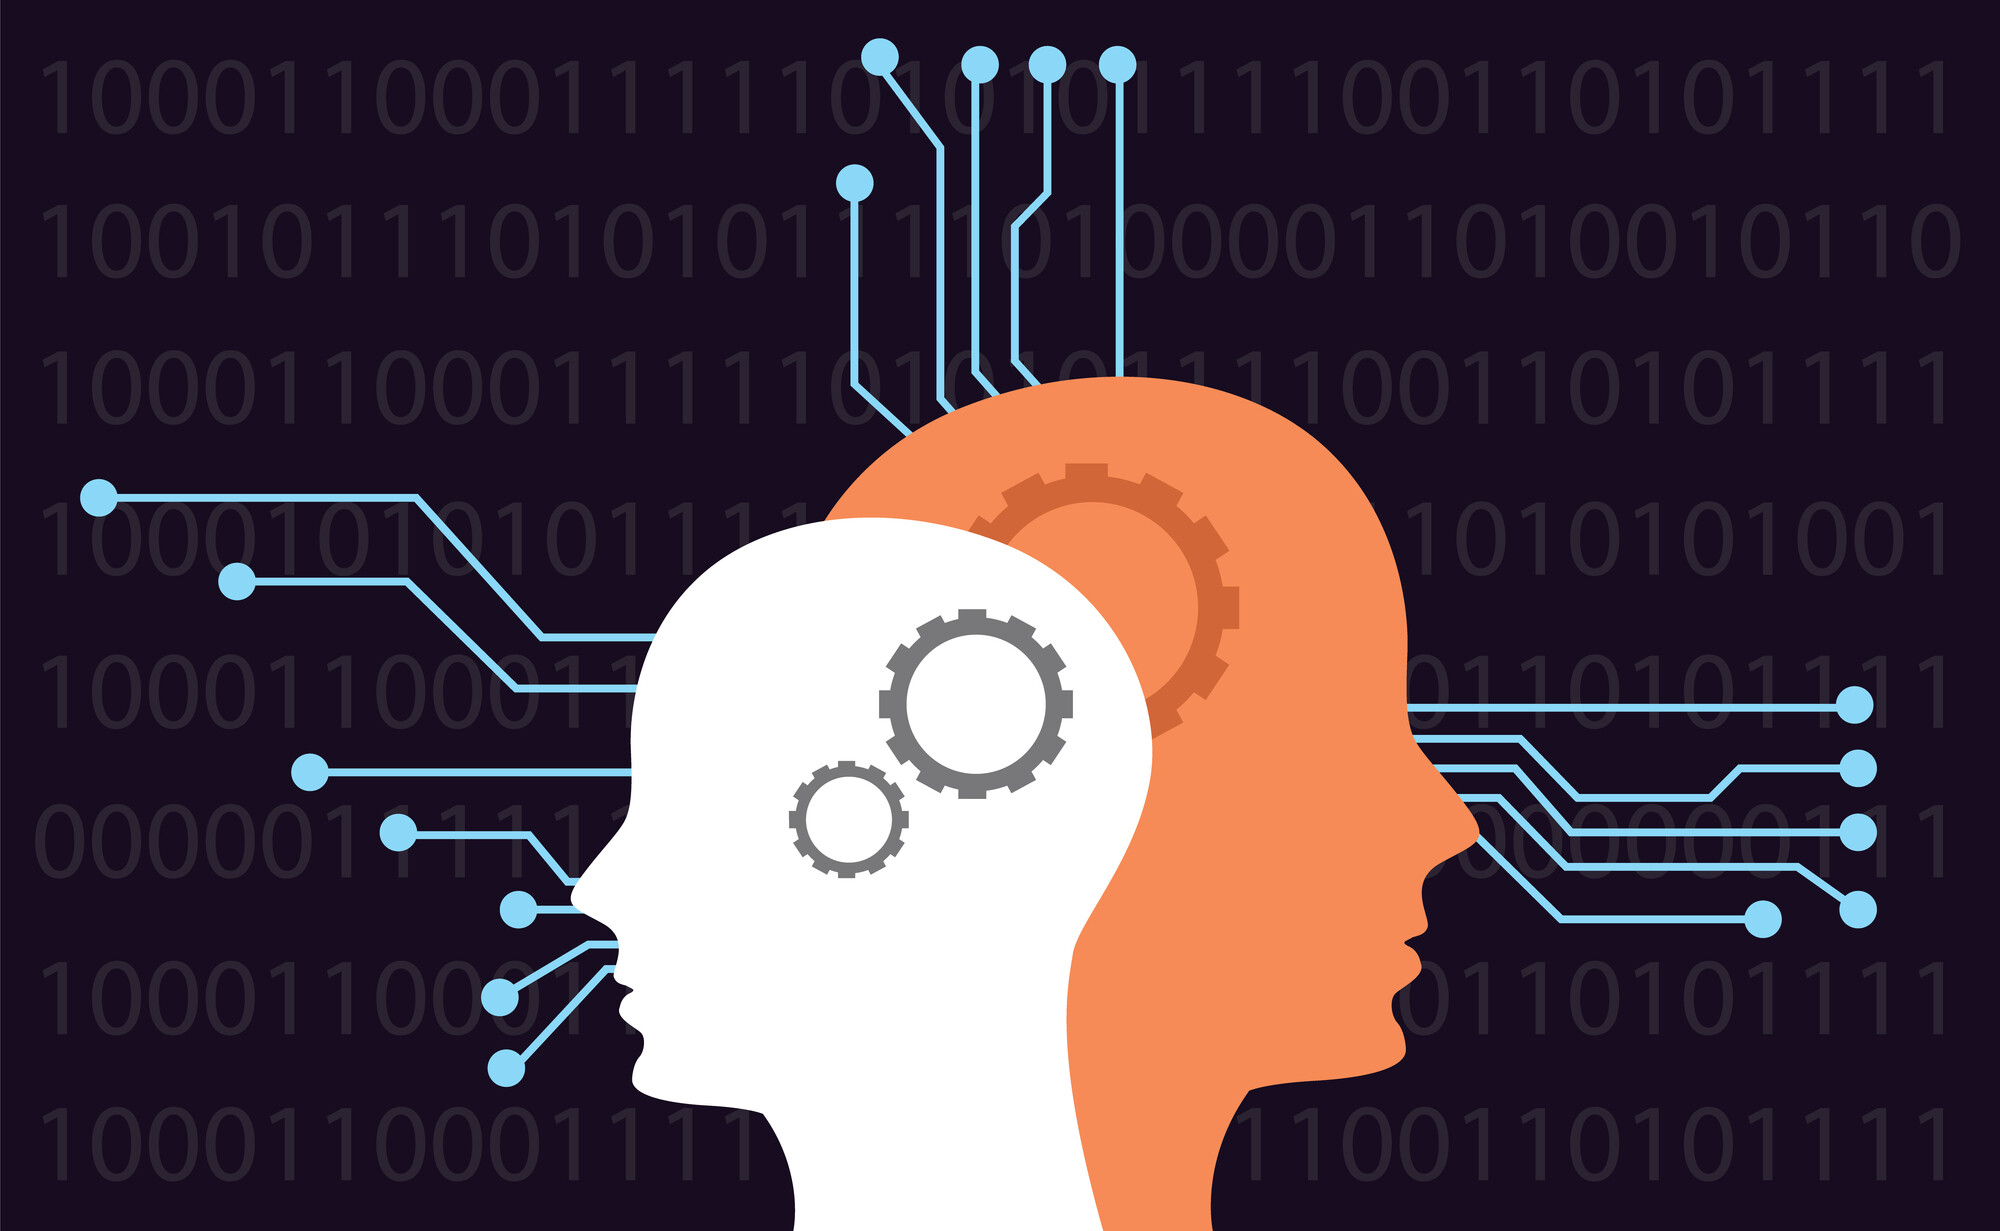 Post precedente: L’uso dell’IA nell’apprendimento: opportunità o minaccia?